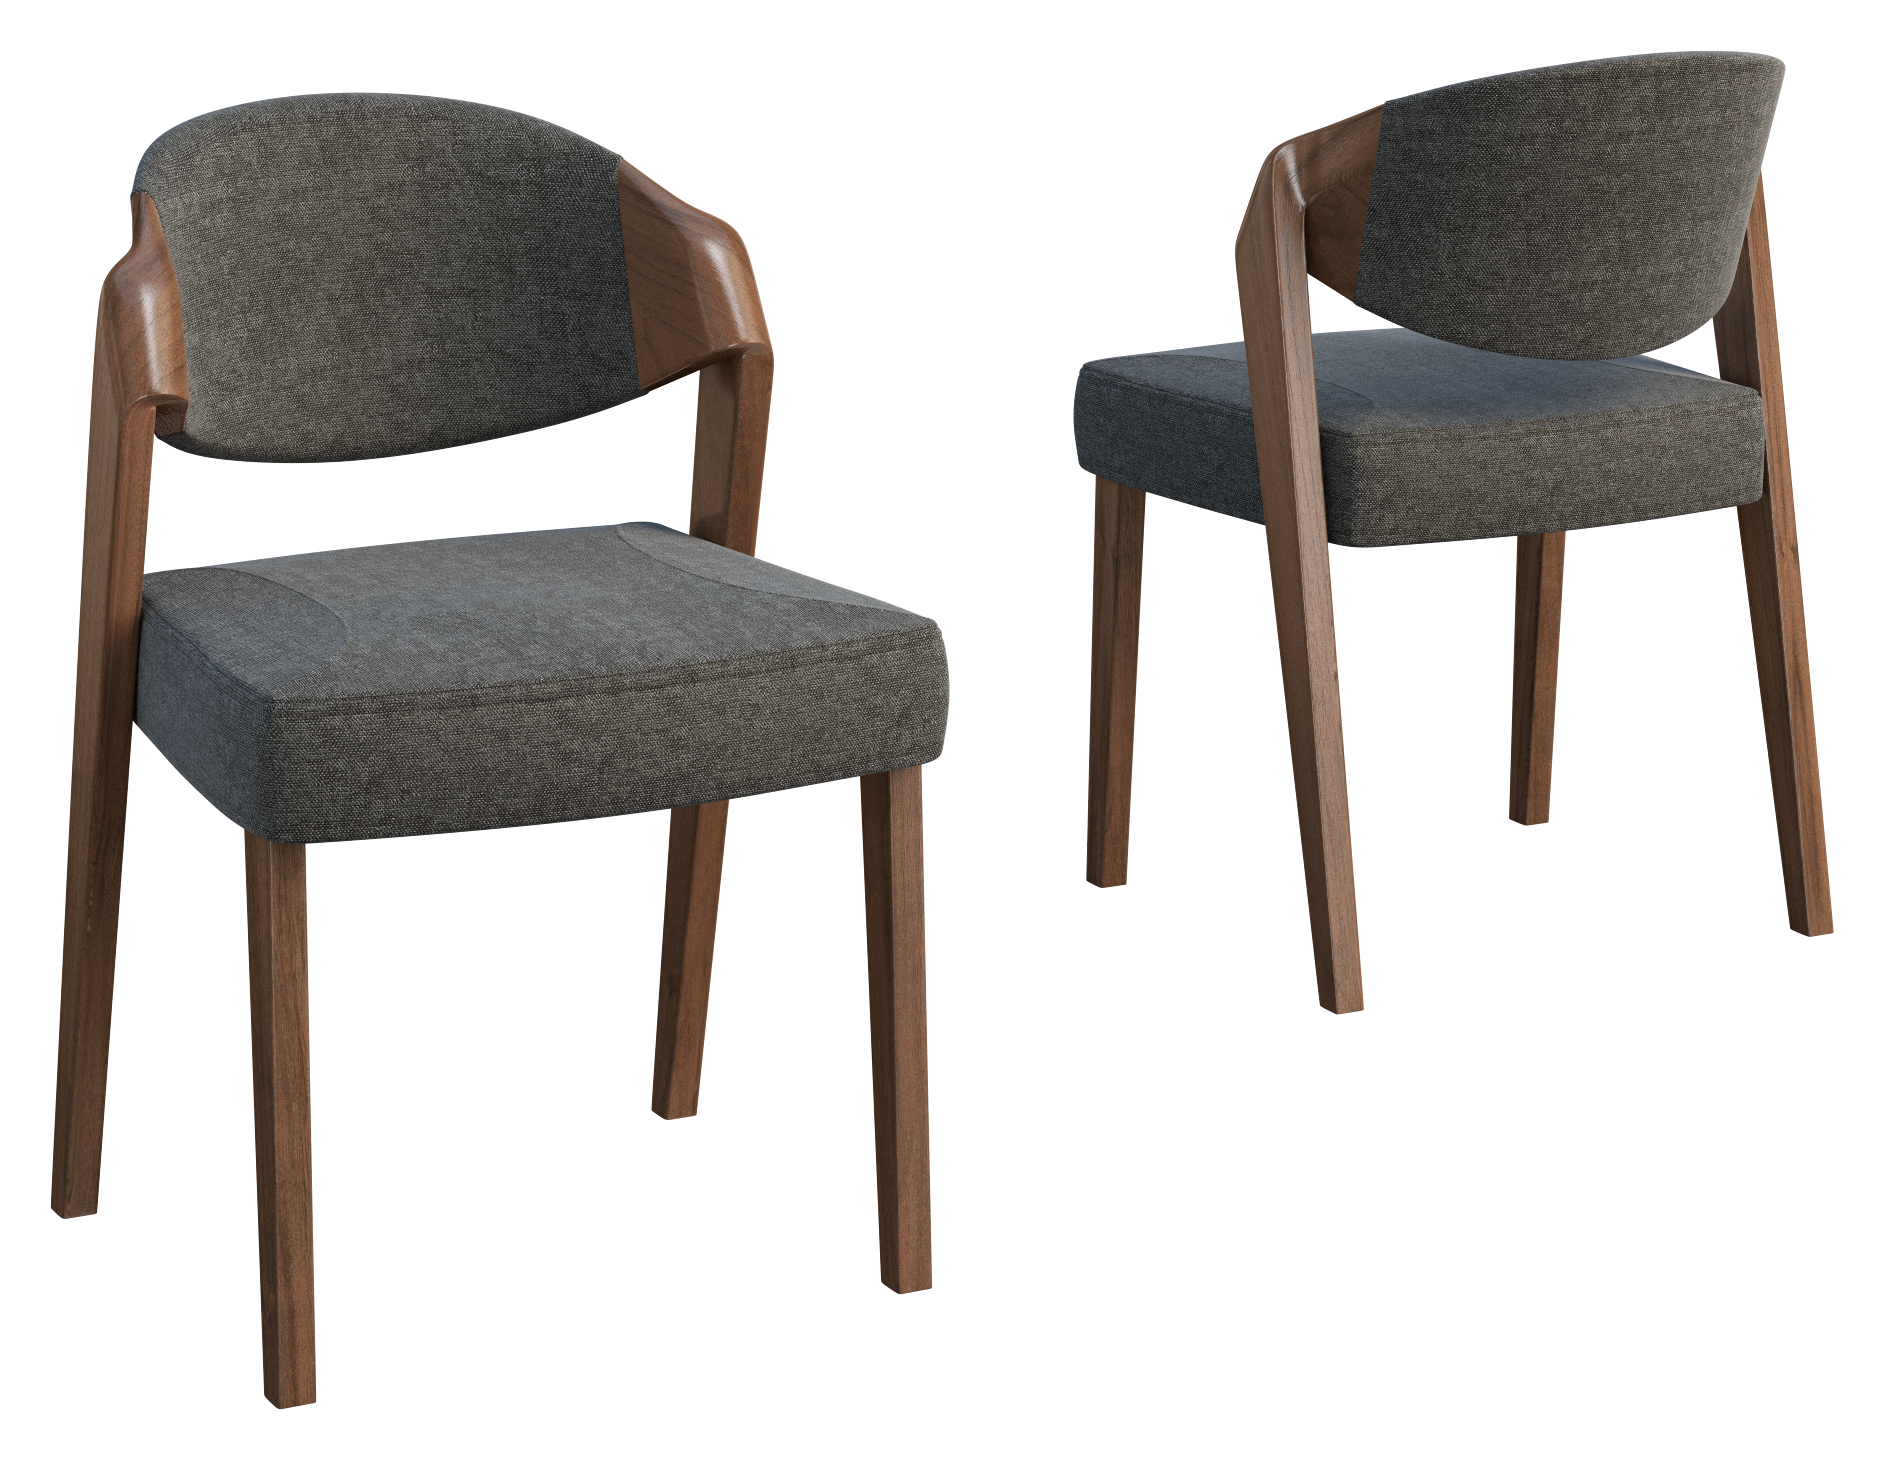 Krzesło w szarej tkaninie i drewnianych brązowych nogach